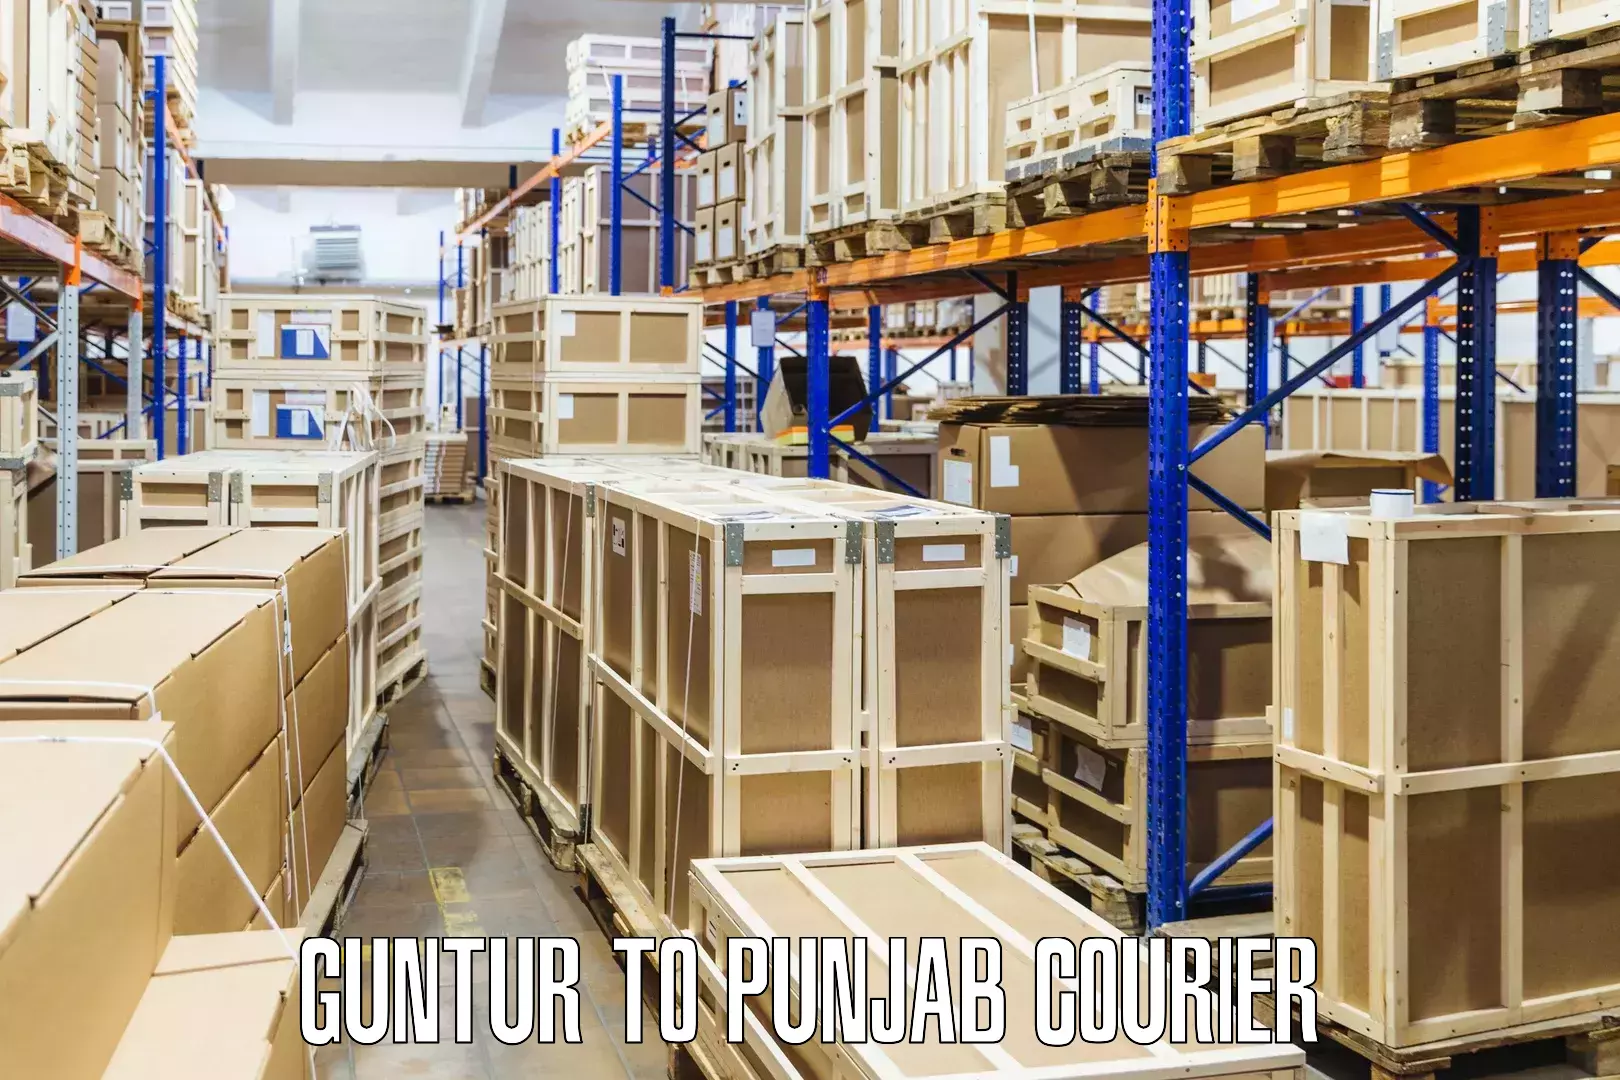 High-speed parcel service Guntur to Punjab